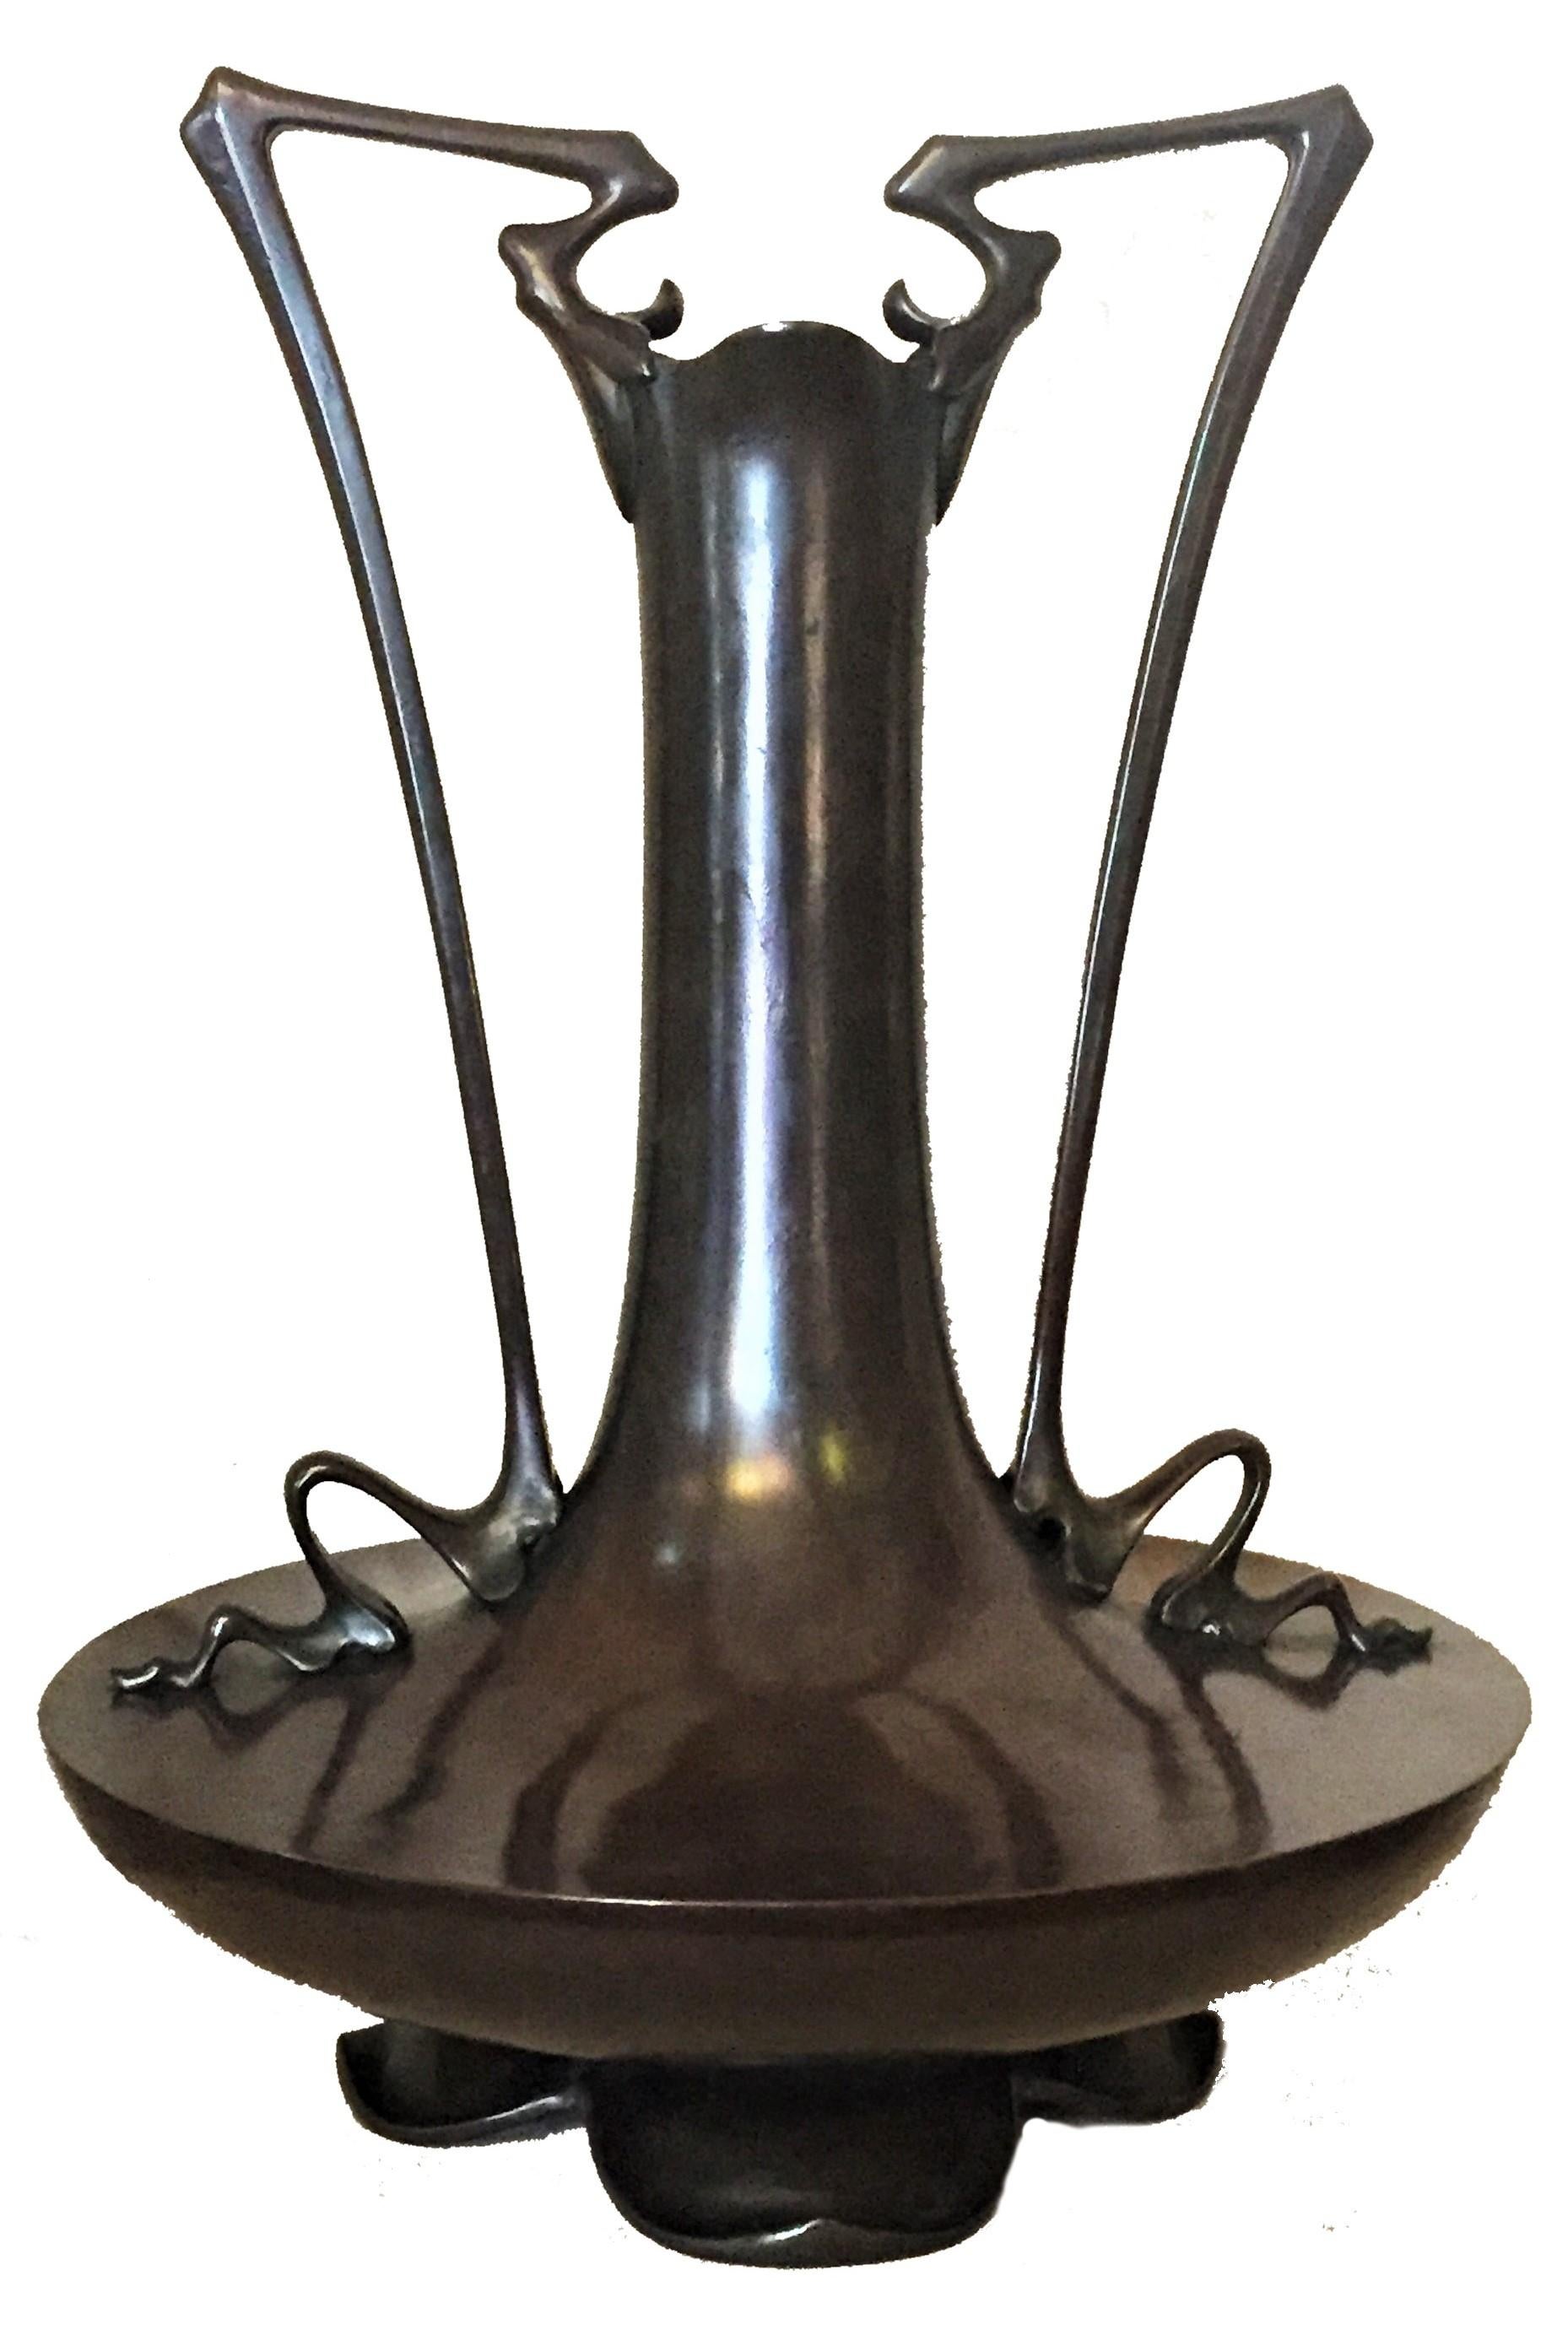 Bien qu'il ne soit pas marqué, ce rare et important vase en bronze patiné, à la fois grandiose et exquis, ne présente que quelques petits détails, comme la forme des anses, ainsi que la base, qui représente une fleur de lotus renversée, suggérant